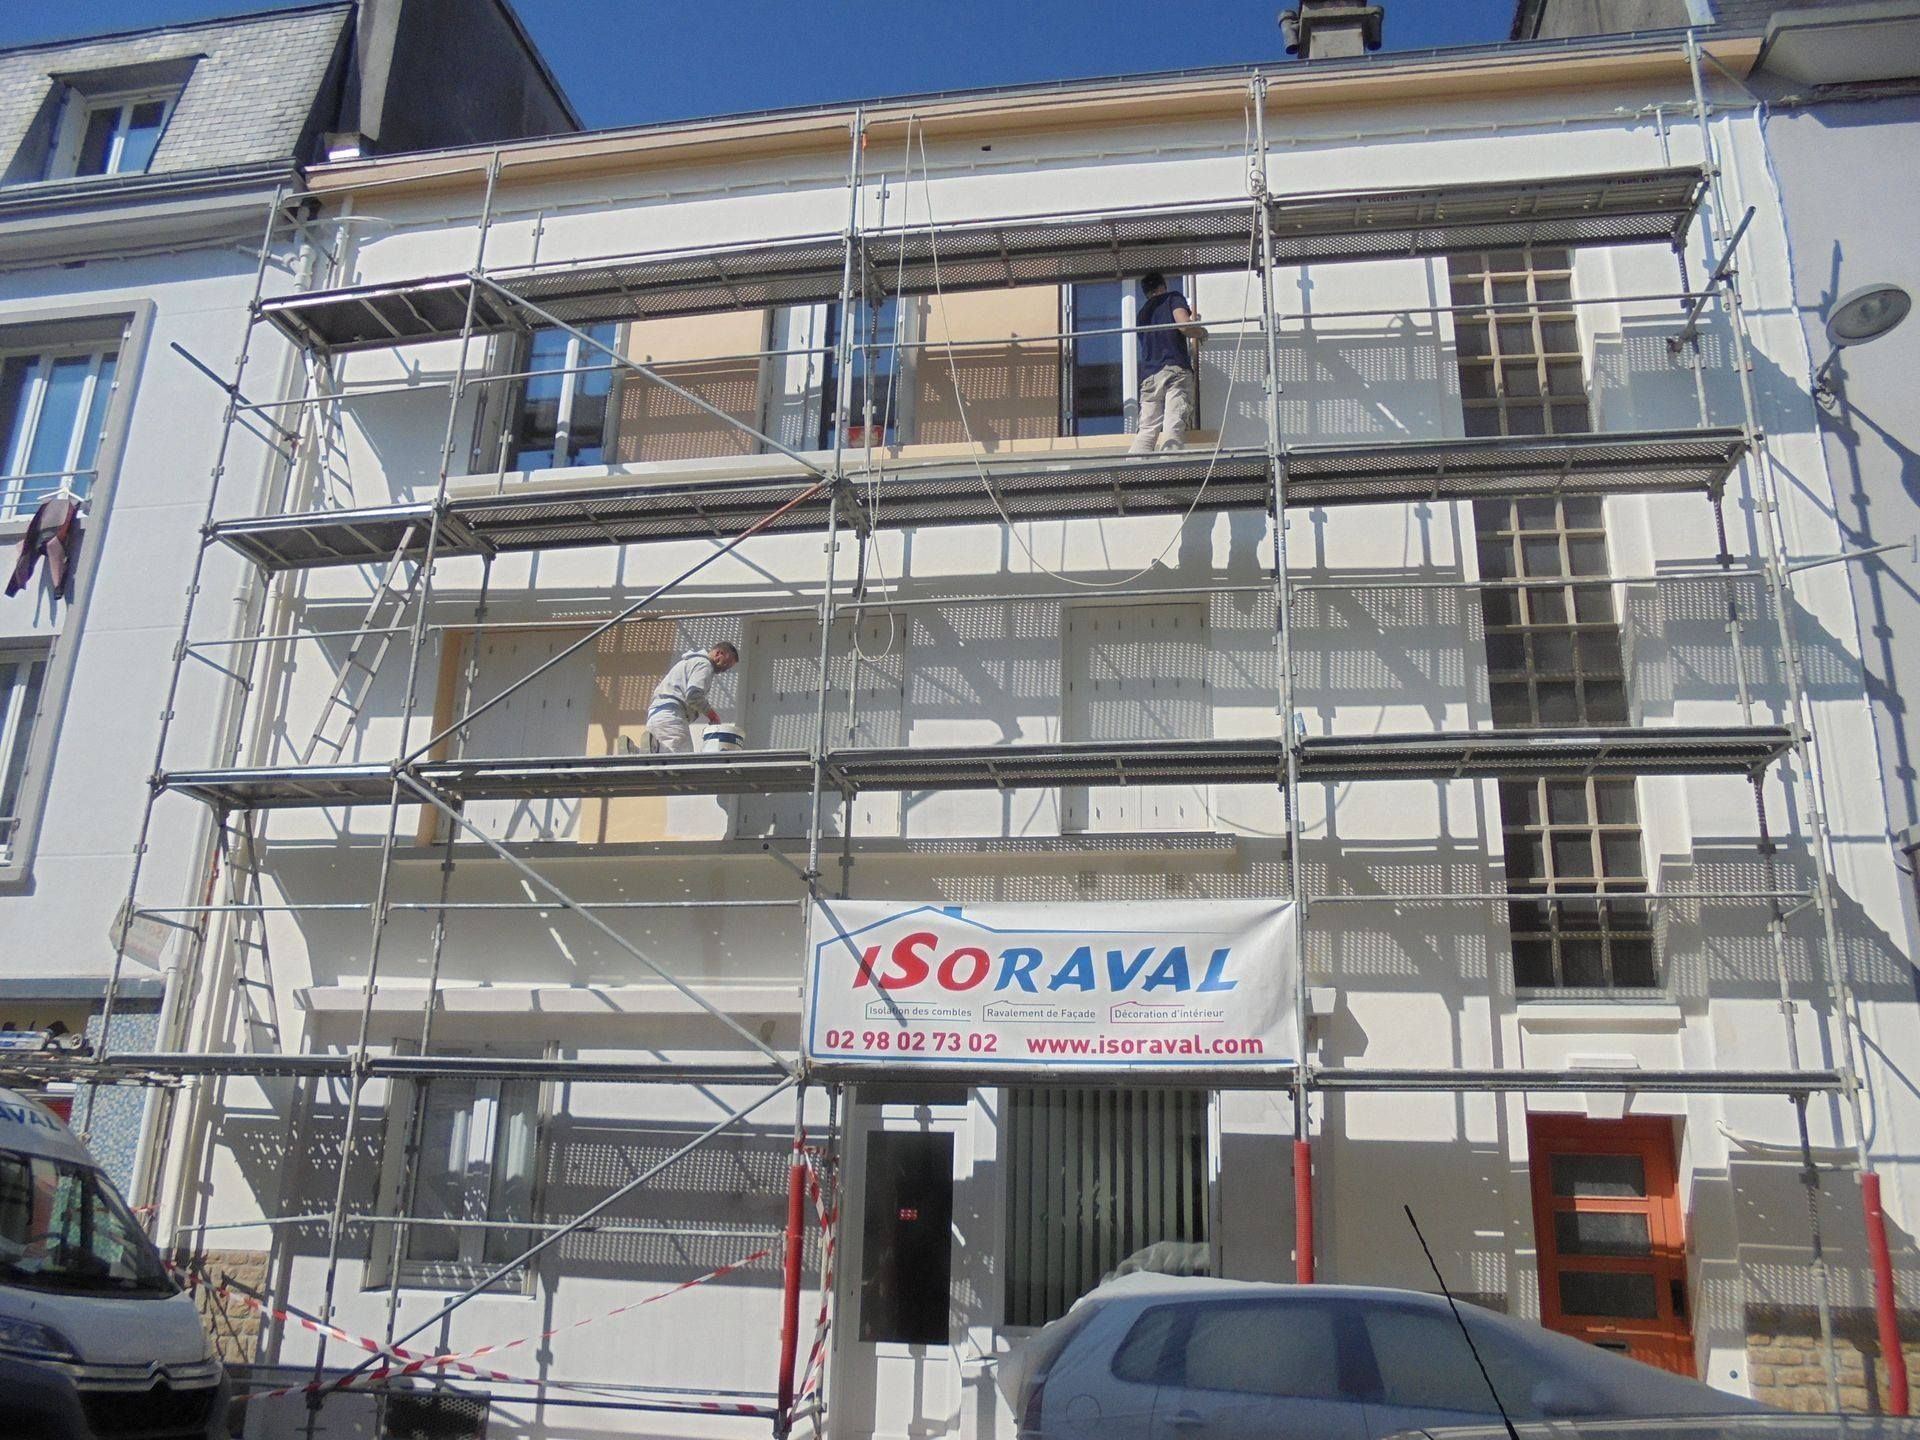 Échafaudage avec le logo Isoraval sur la façade d'un immeuble